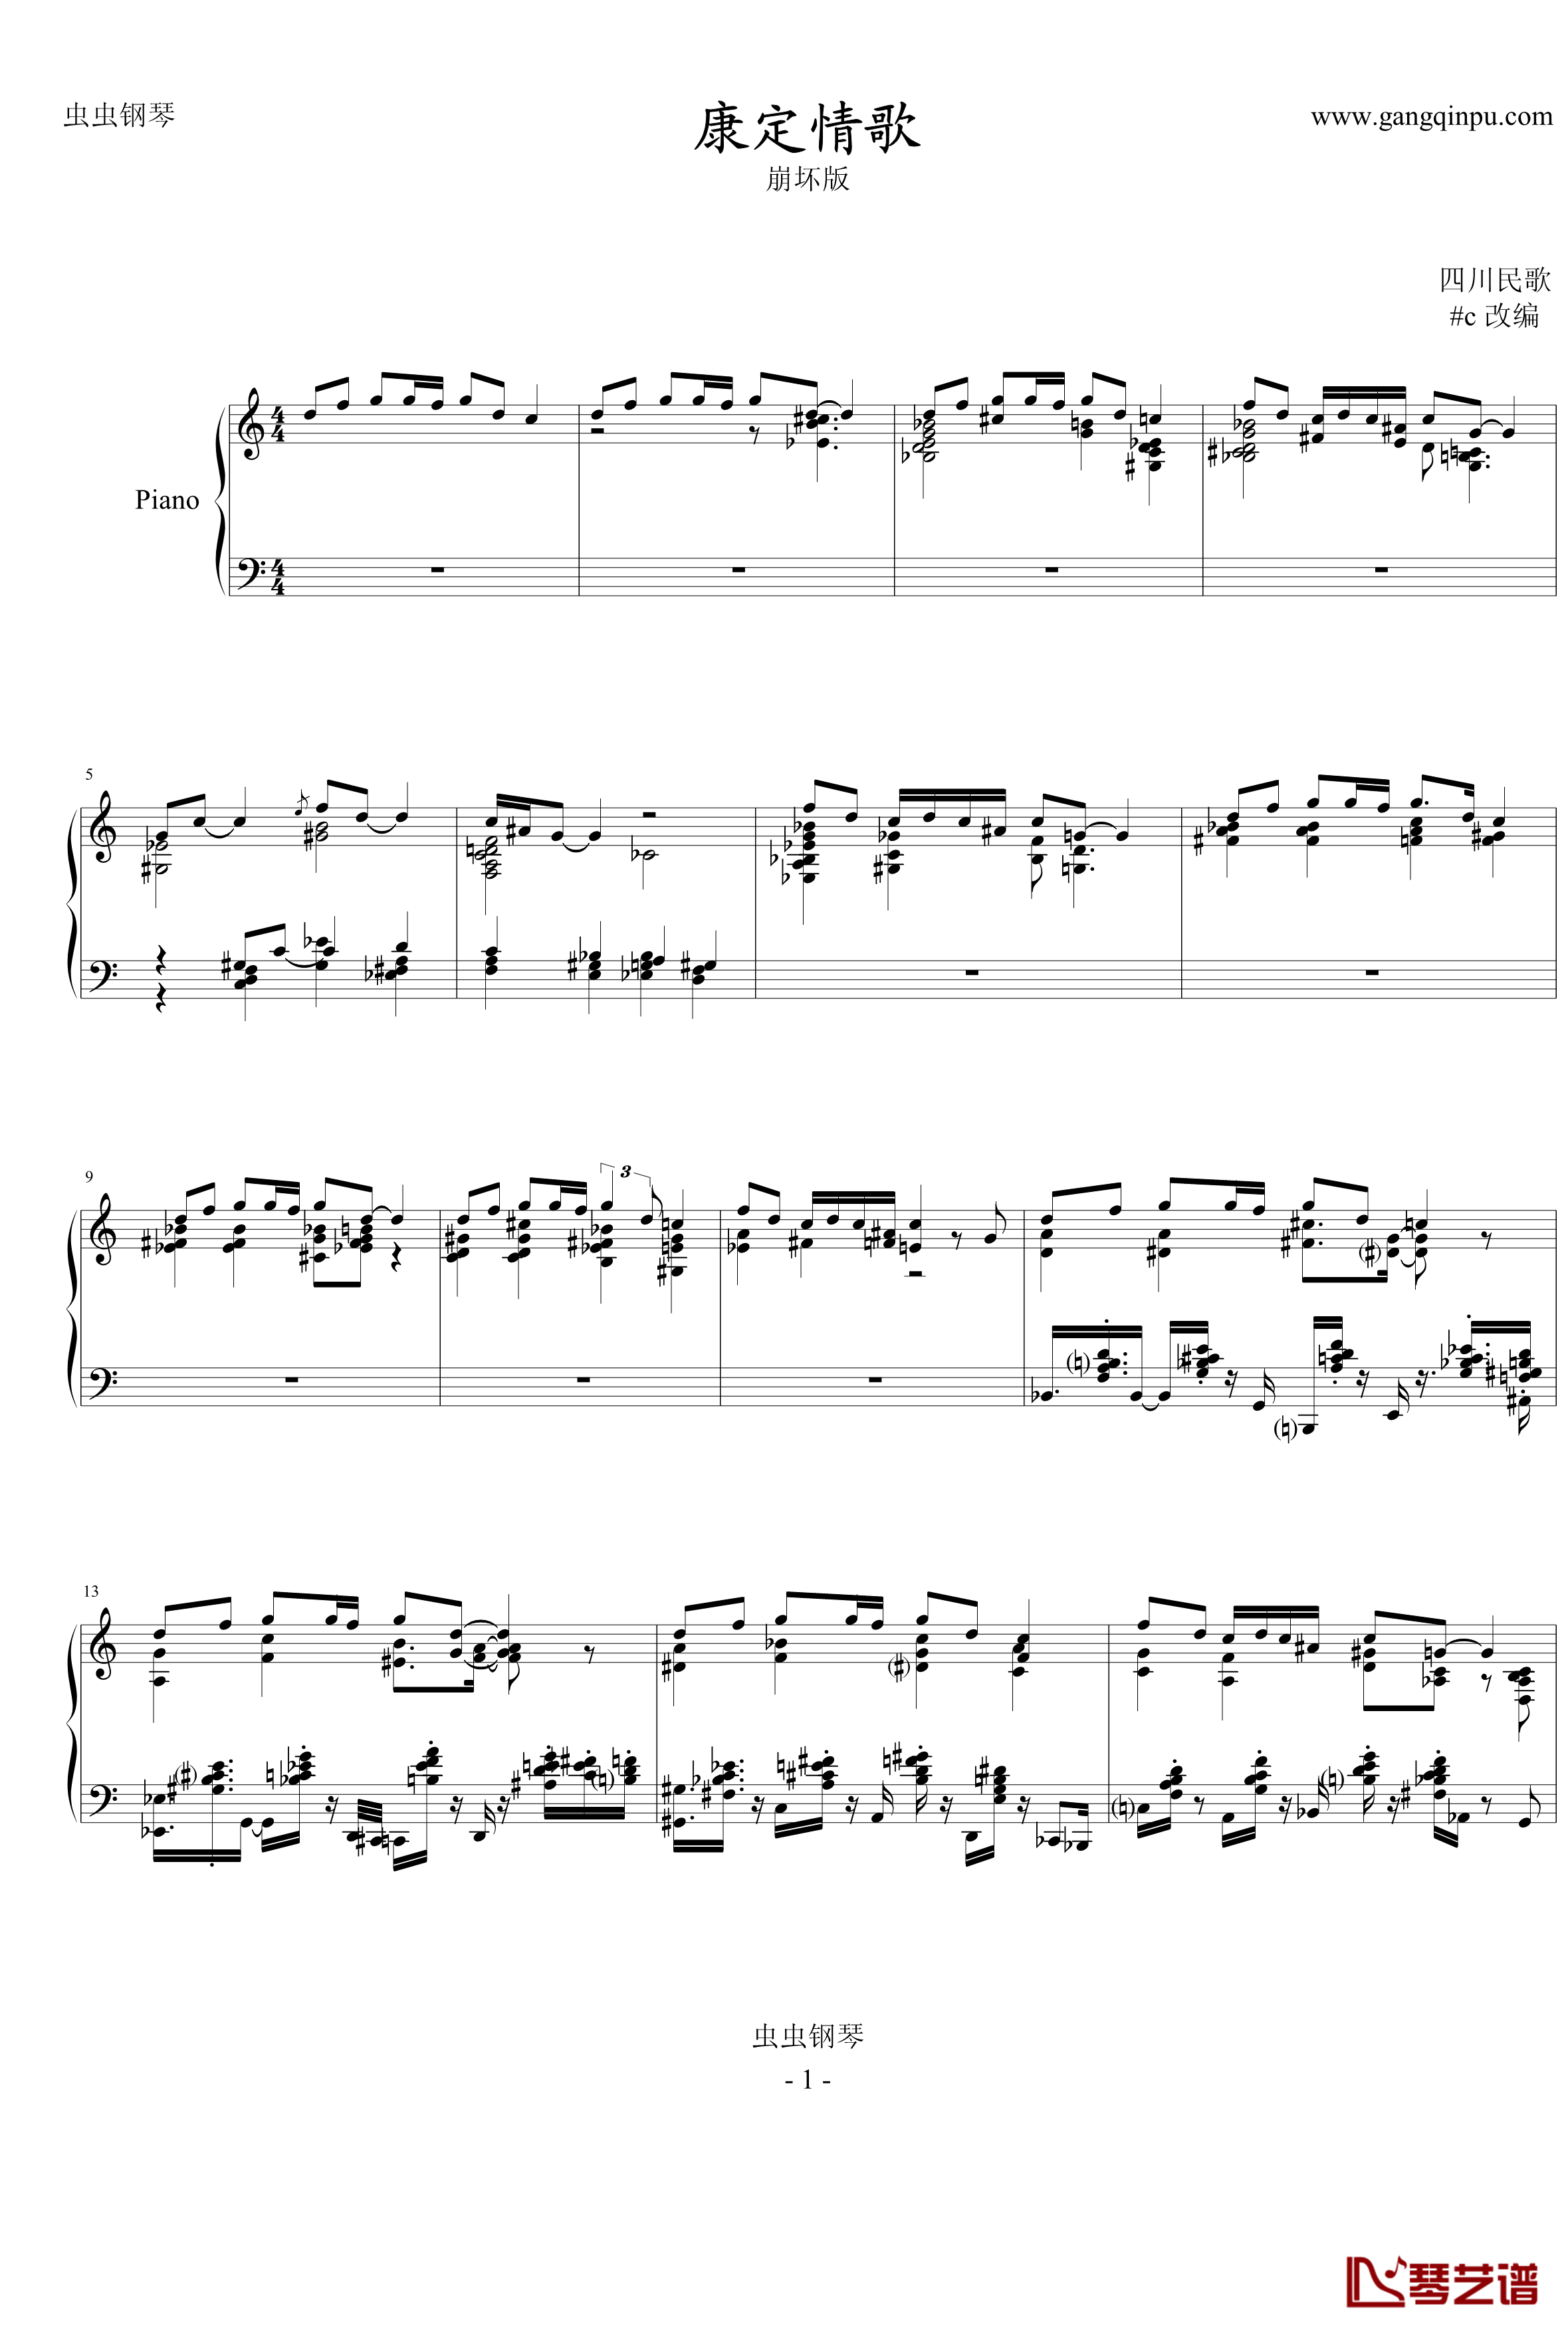 康定情歌钢琴谱-崩坏版中国名曲1